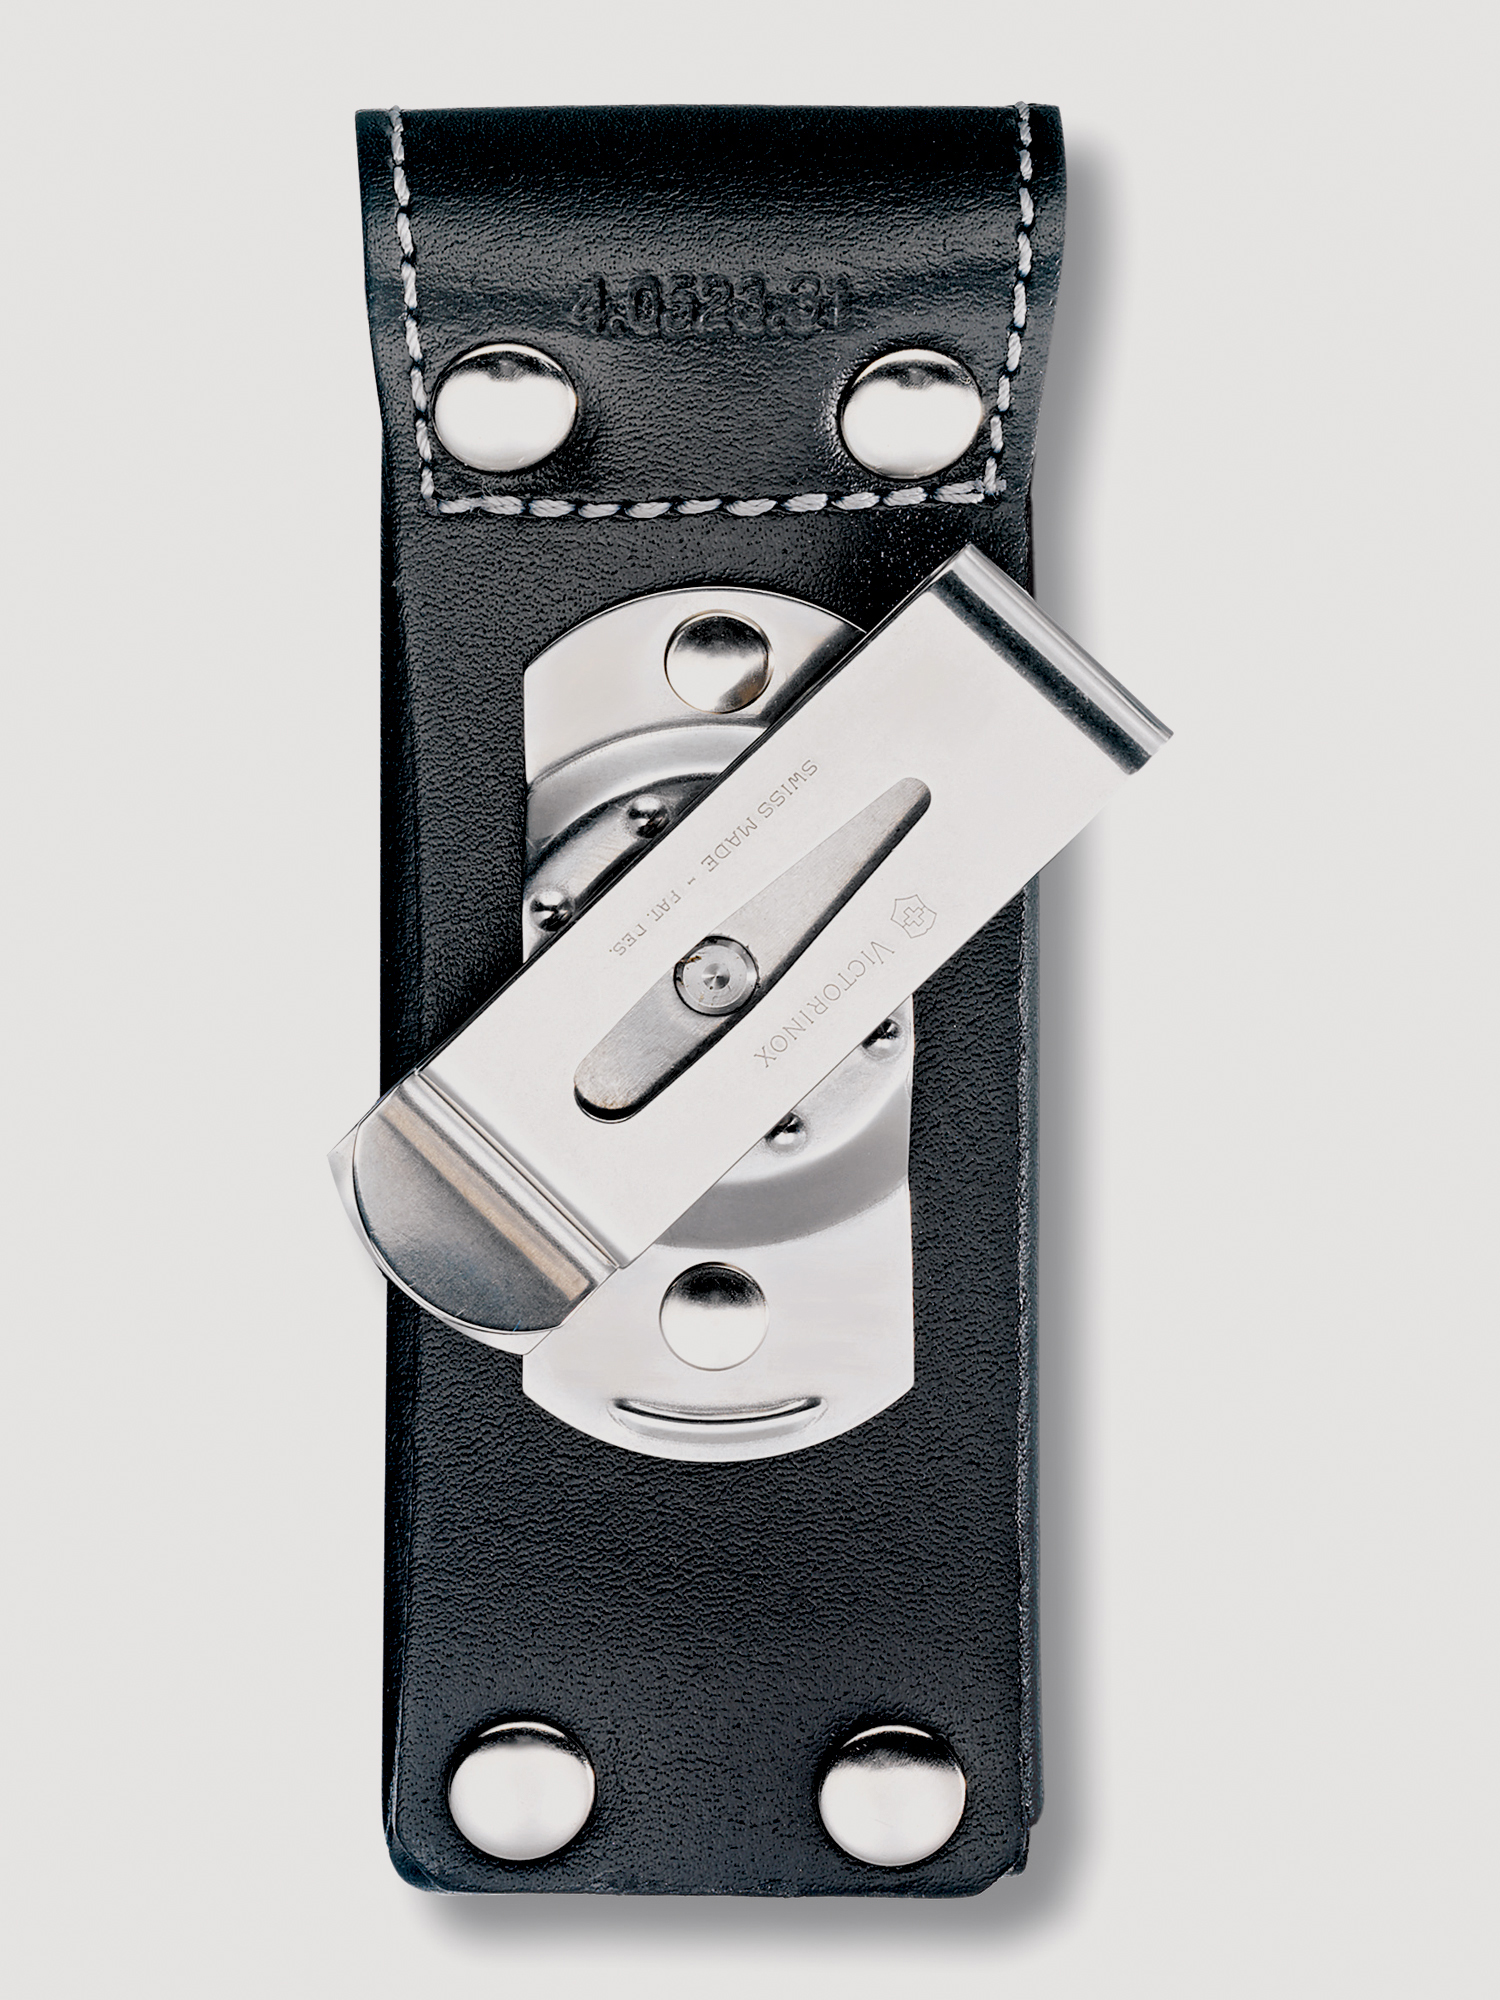 Чехол на ремень VICTORINOX для ножей 111 мм толщиной 3 уровня, с поворотной клипсой, кожаный, чёрный, Черный чехол на ремень victorinox для ножей 111 мм до 6 уровней с поворотной клипсой кожаный чёрный